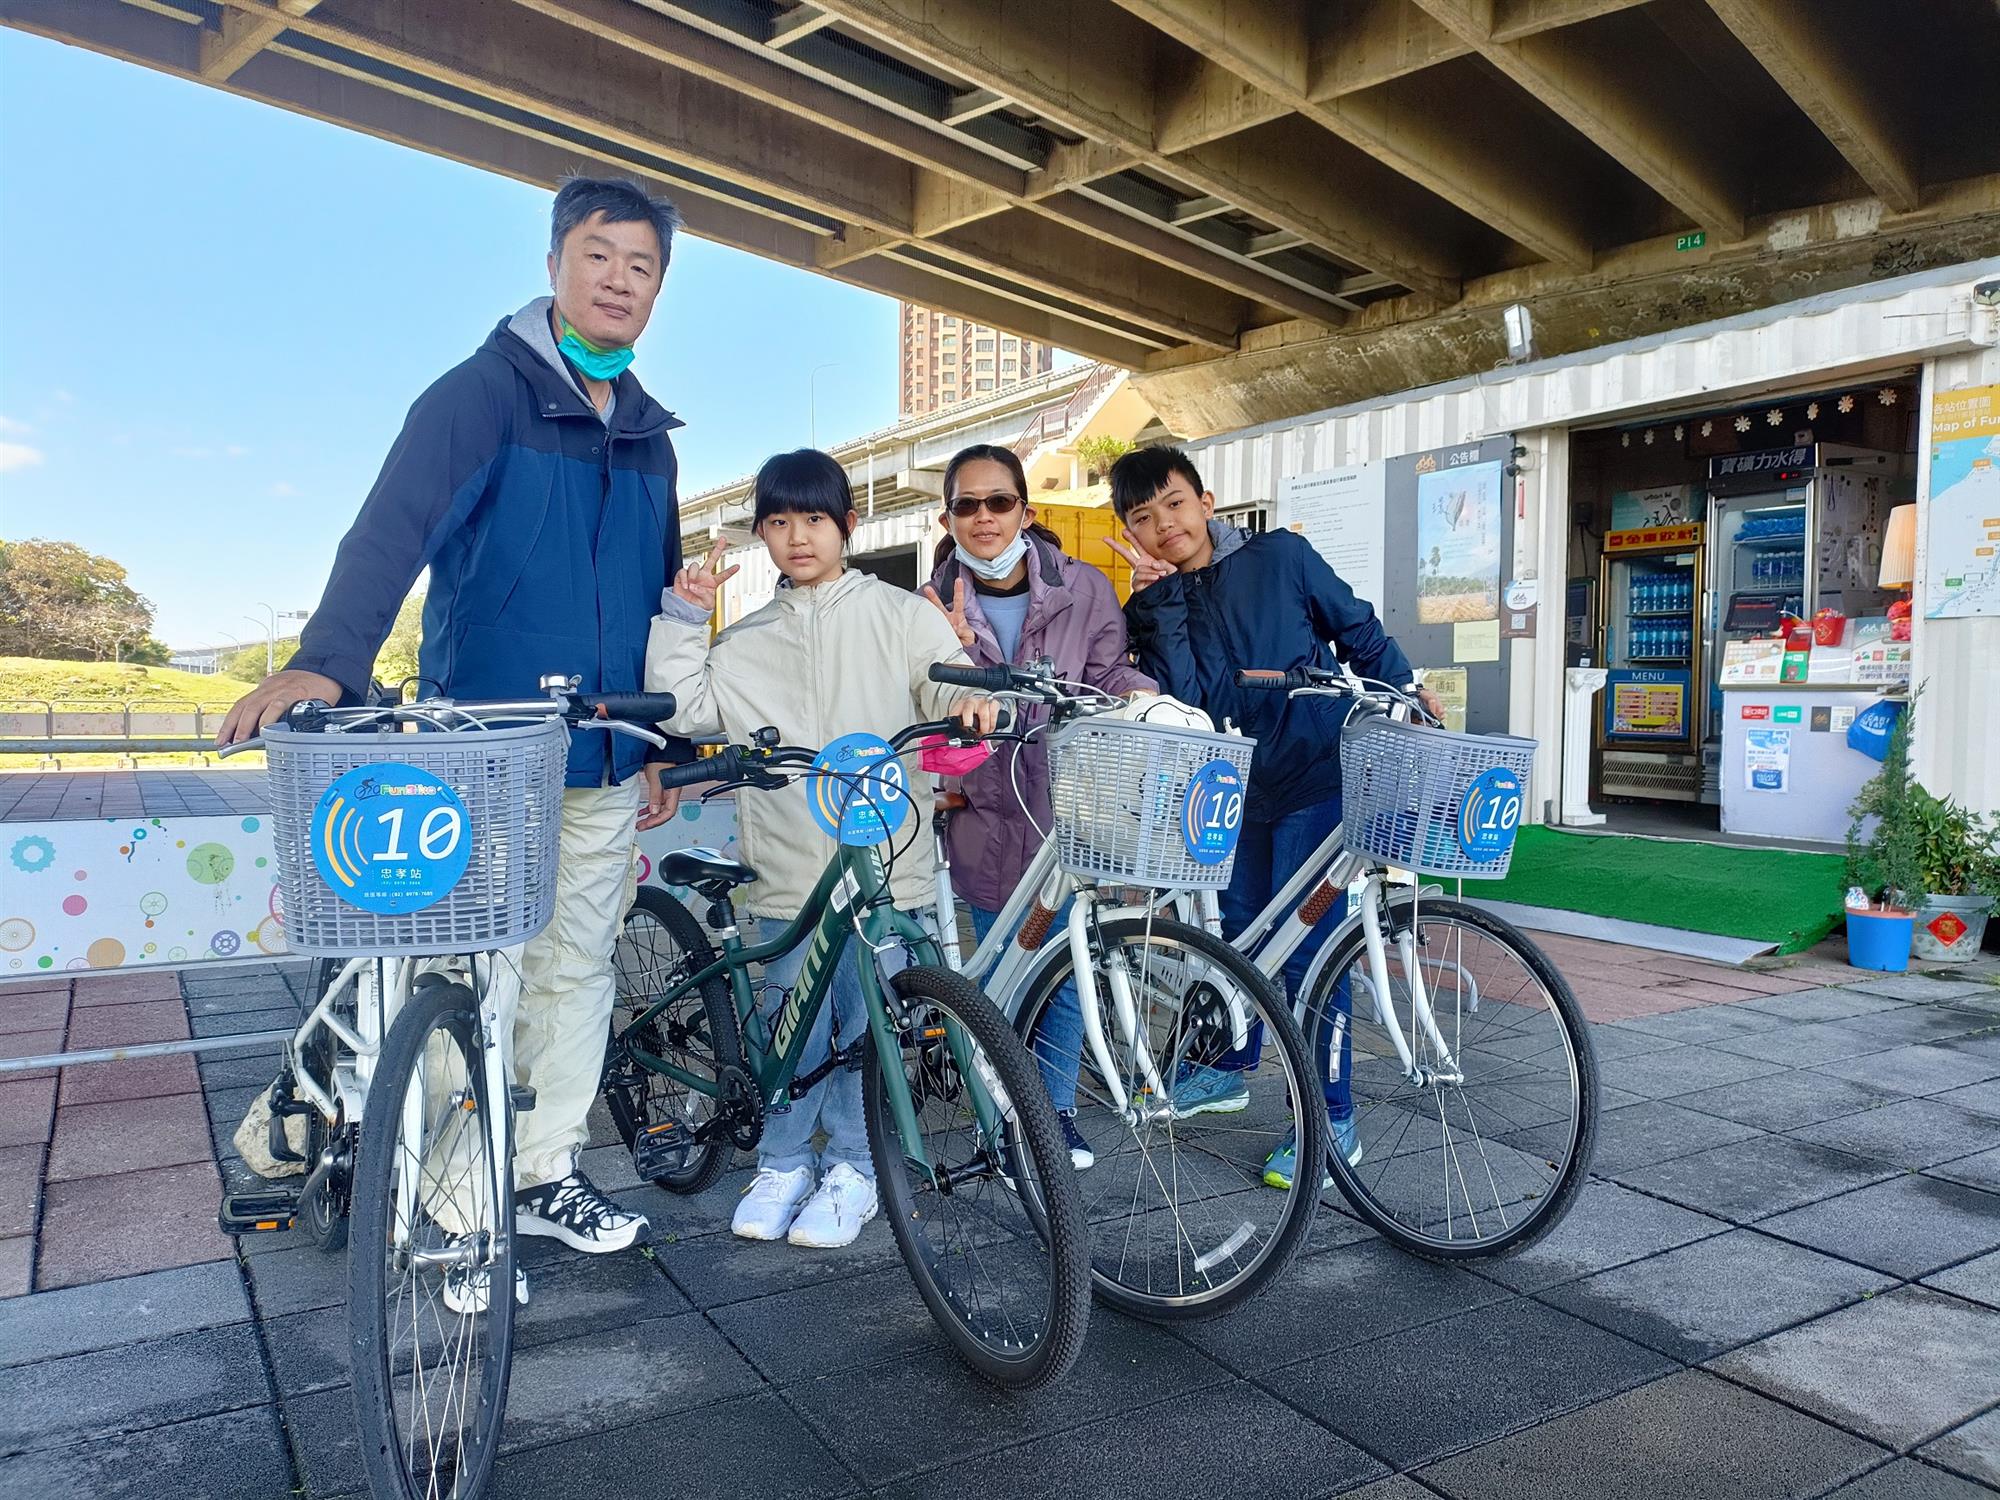 11 新北河濱公園14個自行車租借站，提供民眾便利友善的自行車環境